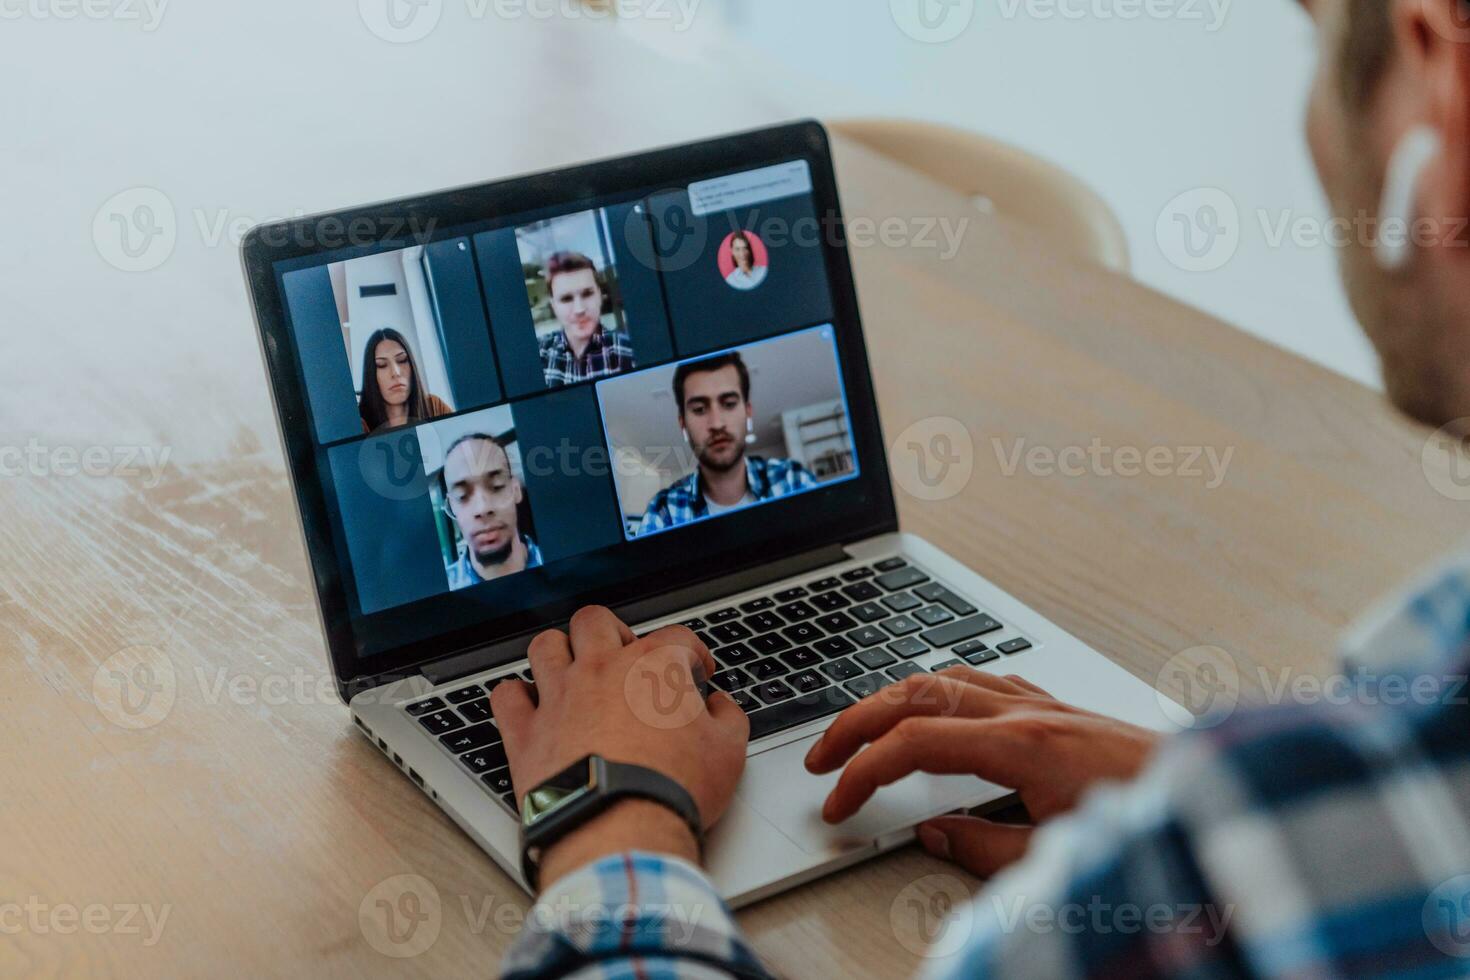 de Mens zittend Bij een tafel in een modern leven kamer, met hoofdtelefoons gebruik makend van een laptop voor bedrijf video chatten, gesprek met vrienden en vermaak foto